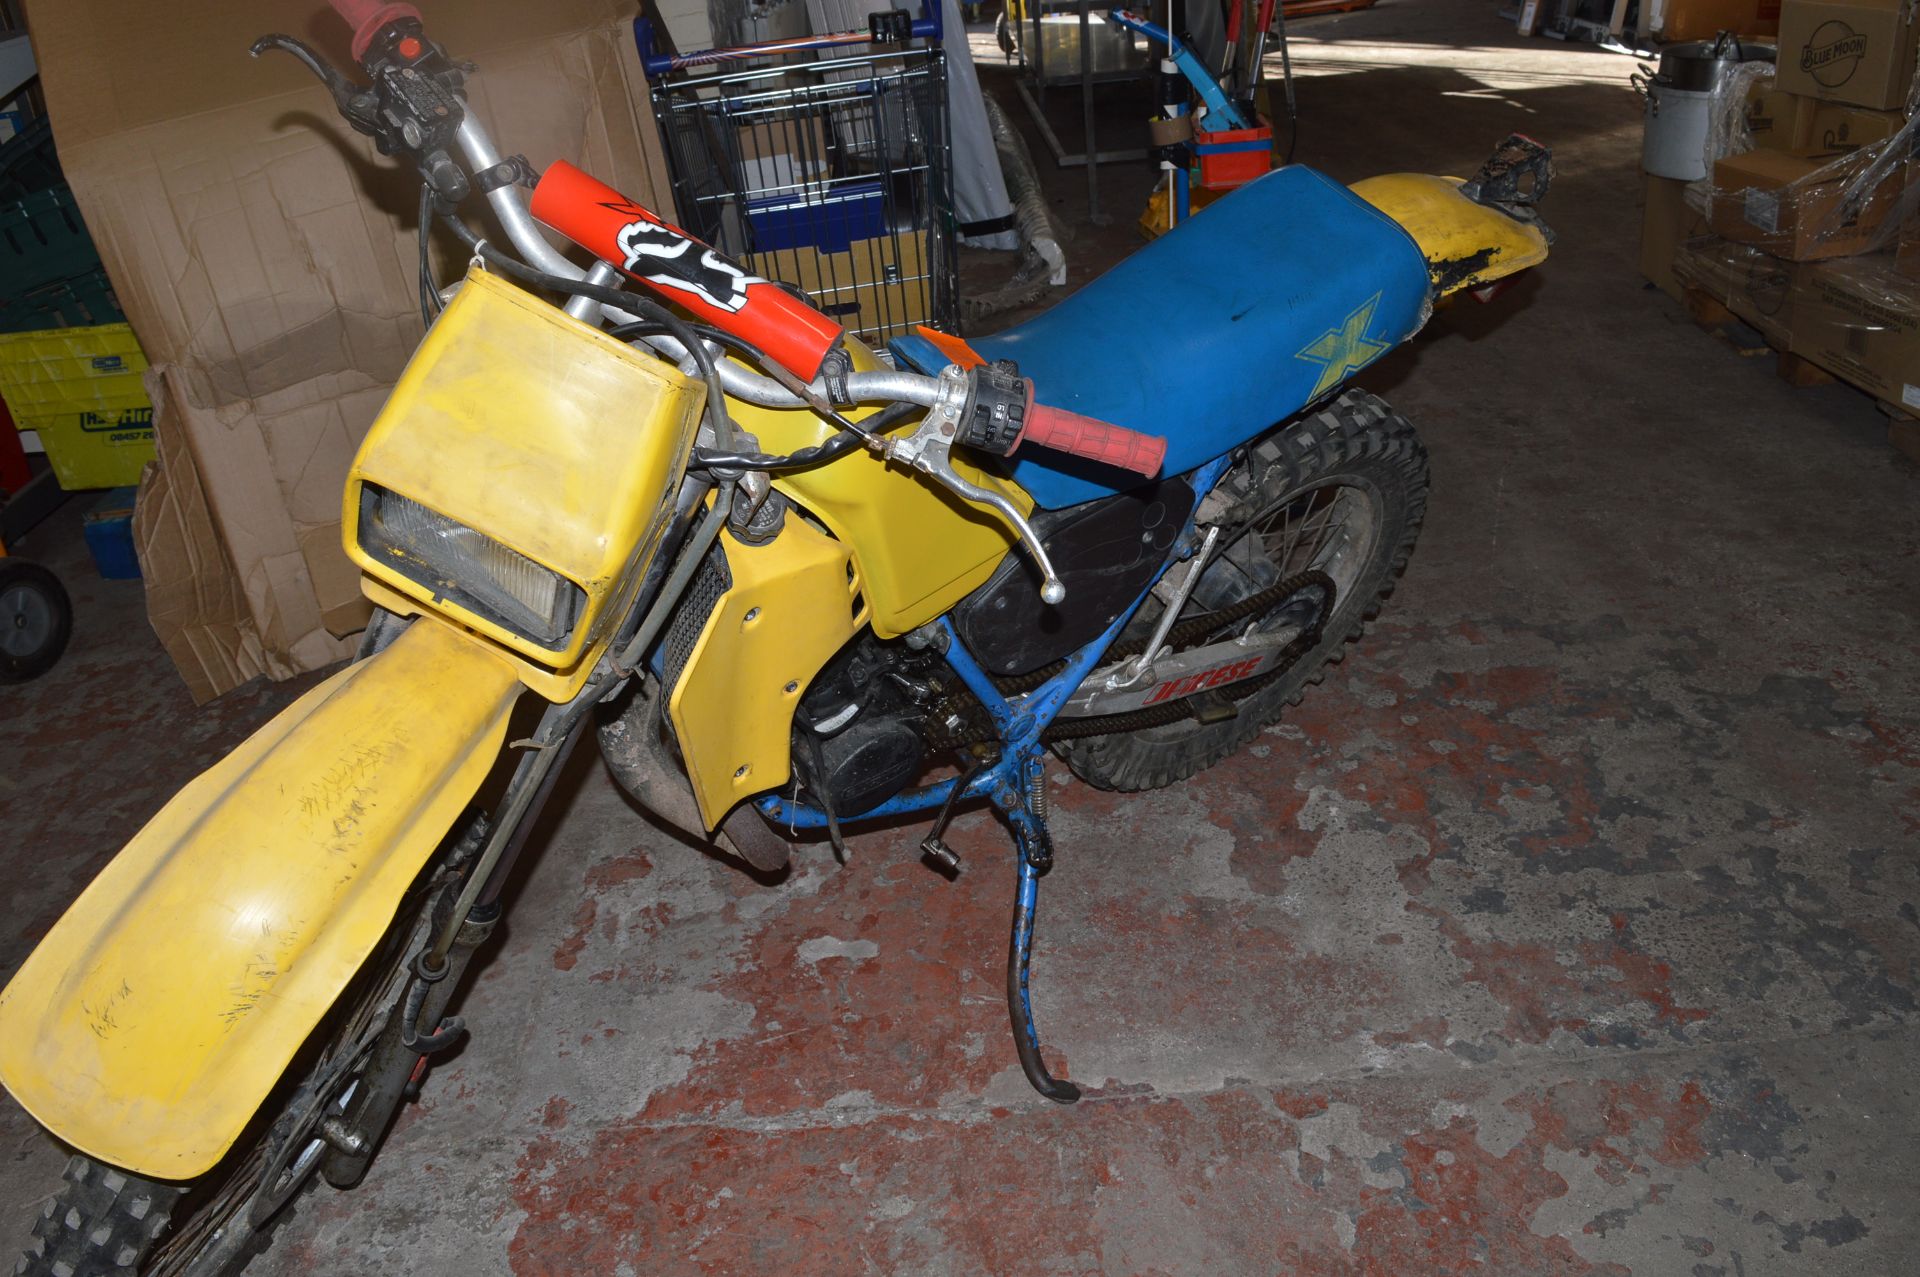 *Suzuki Engine AGV Trials Bike - Image 2 of 2